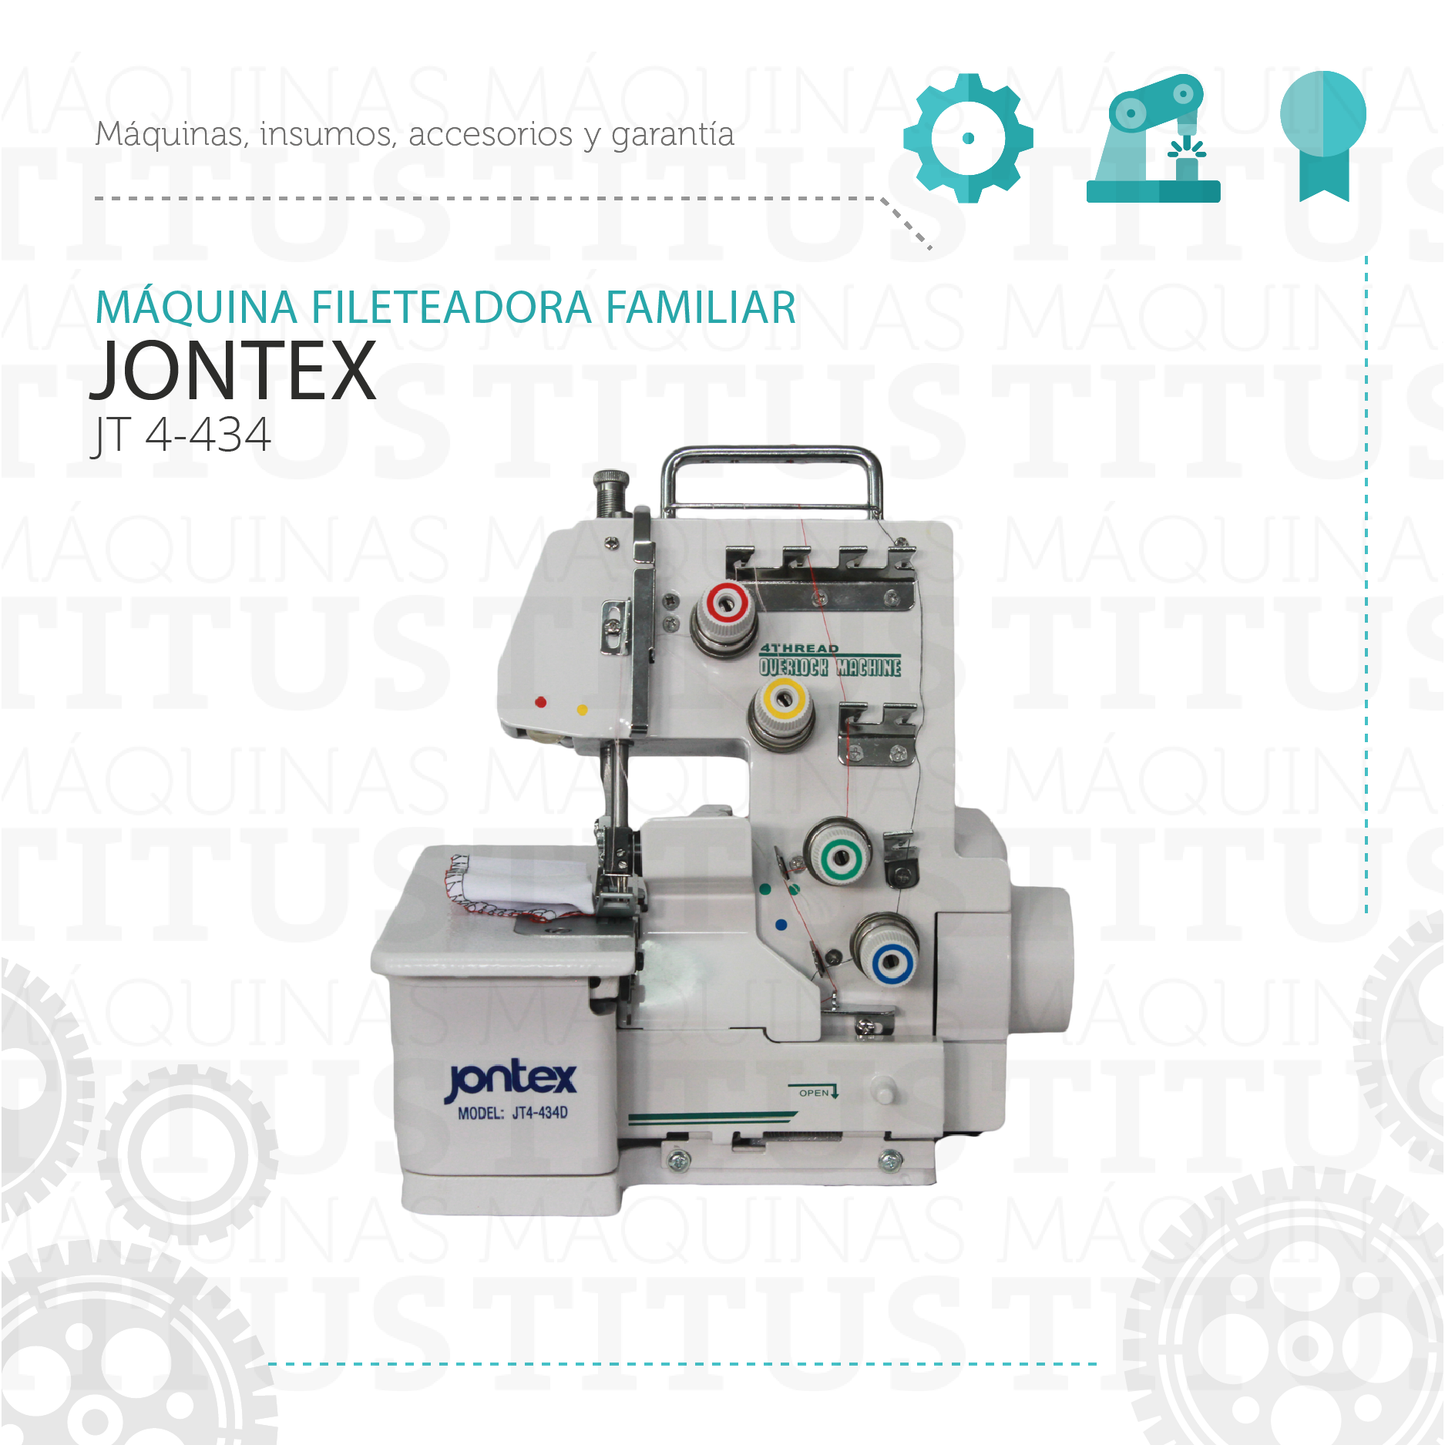 Fileteadora Familiar Jontex JT 4-434 Maquina De Coser - Commercio